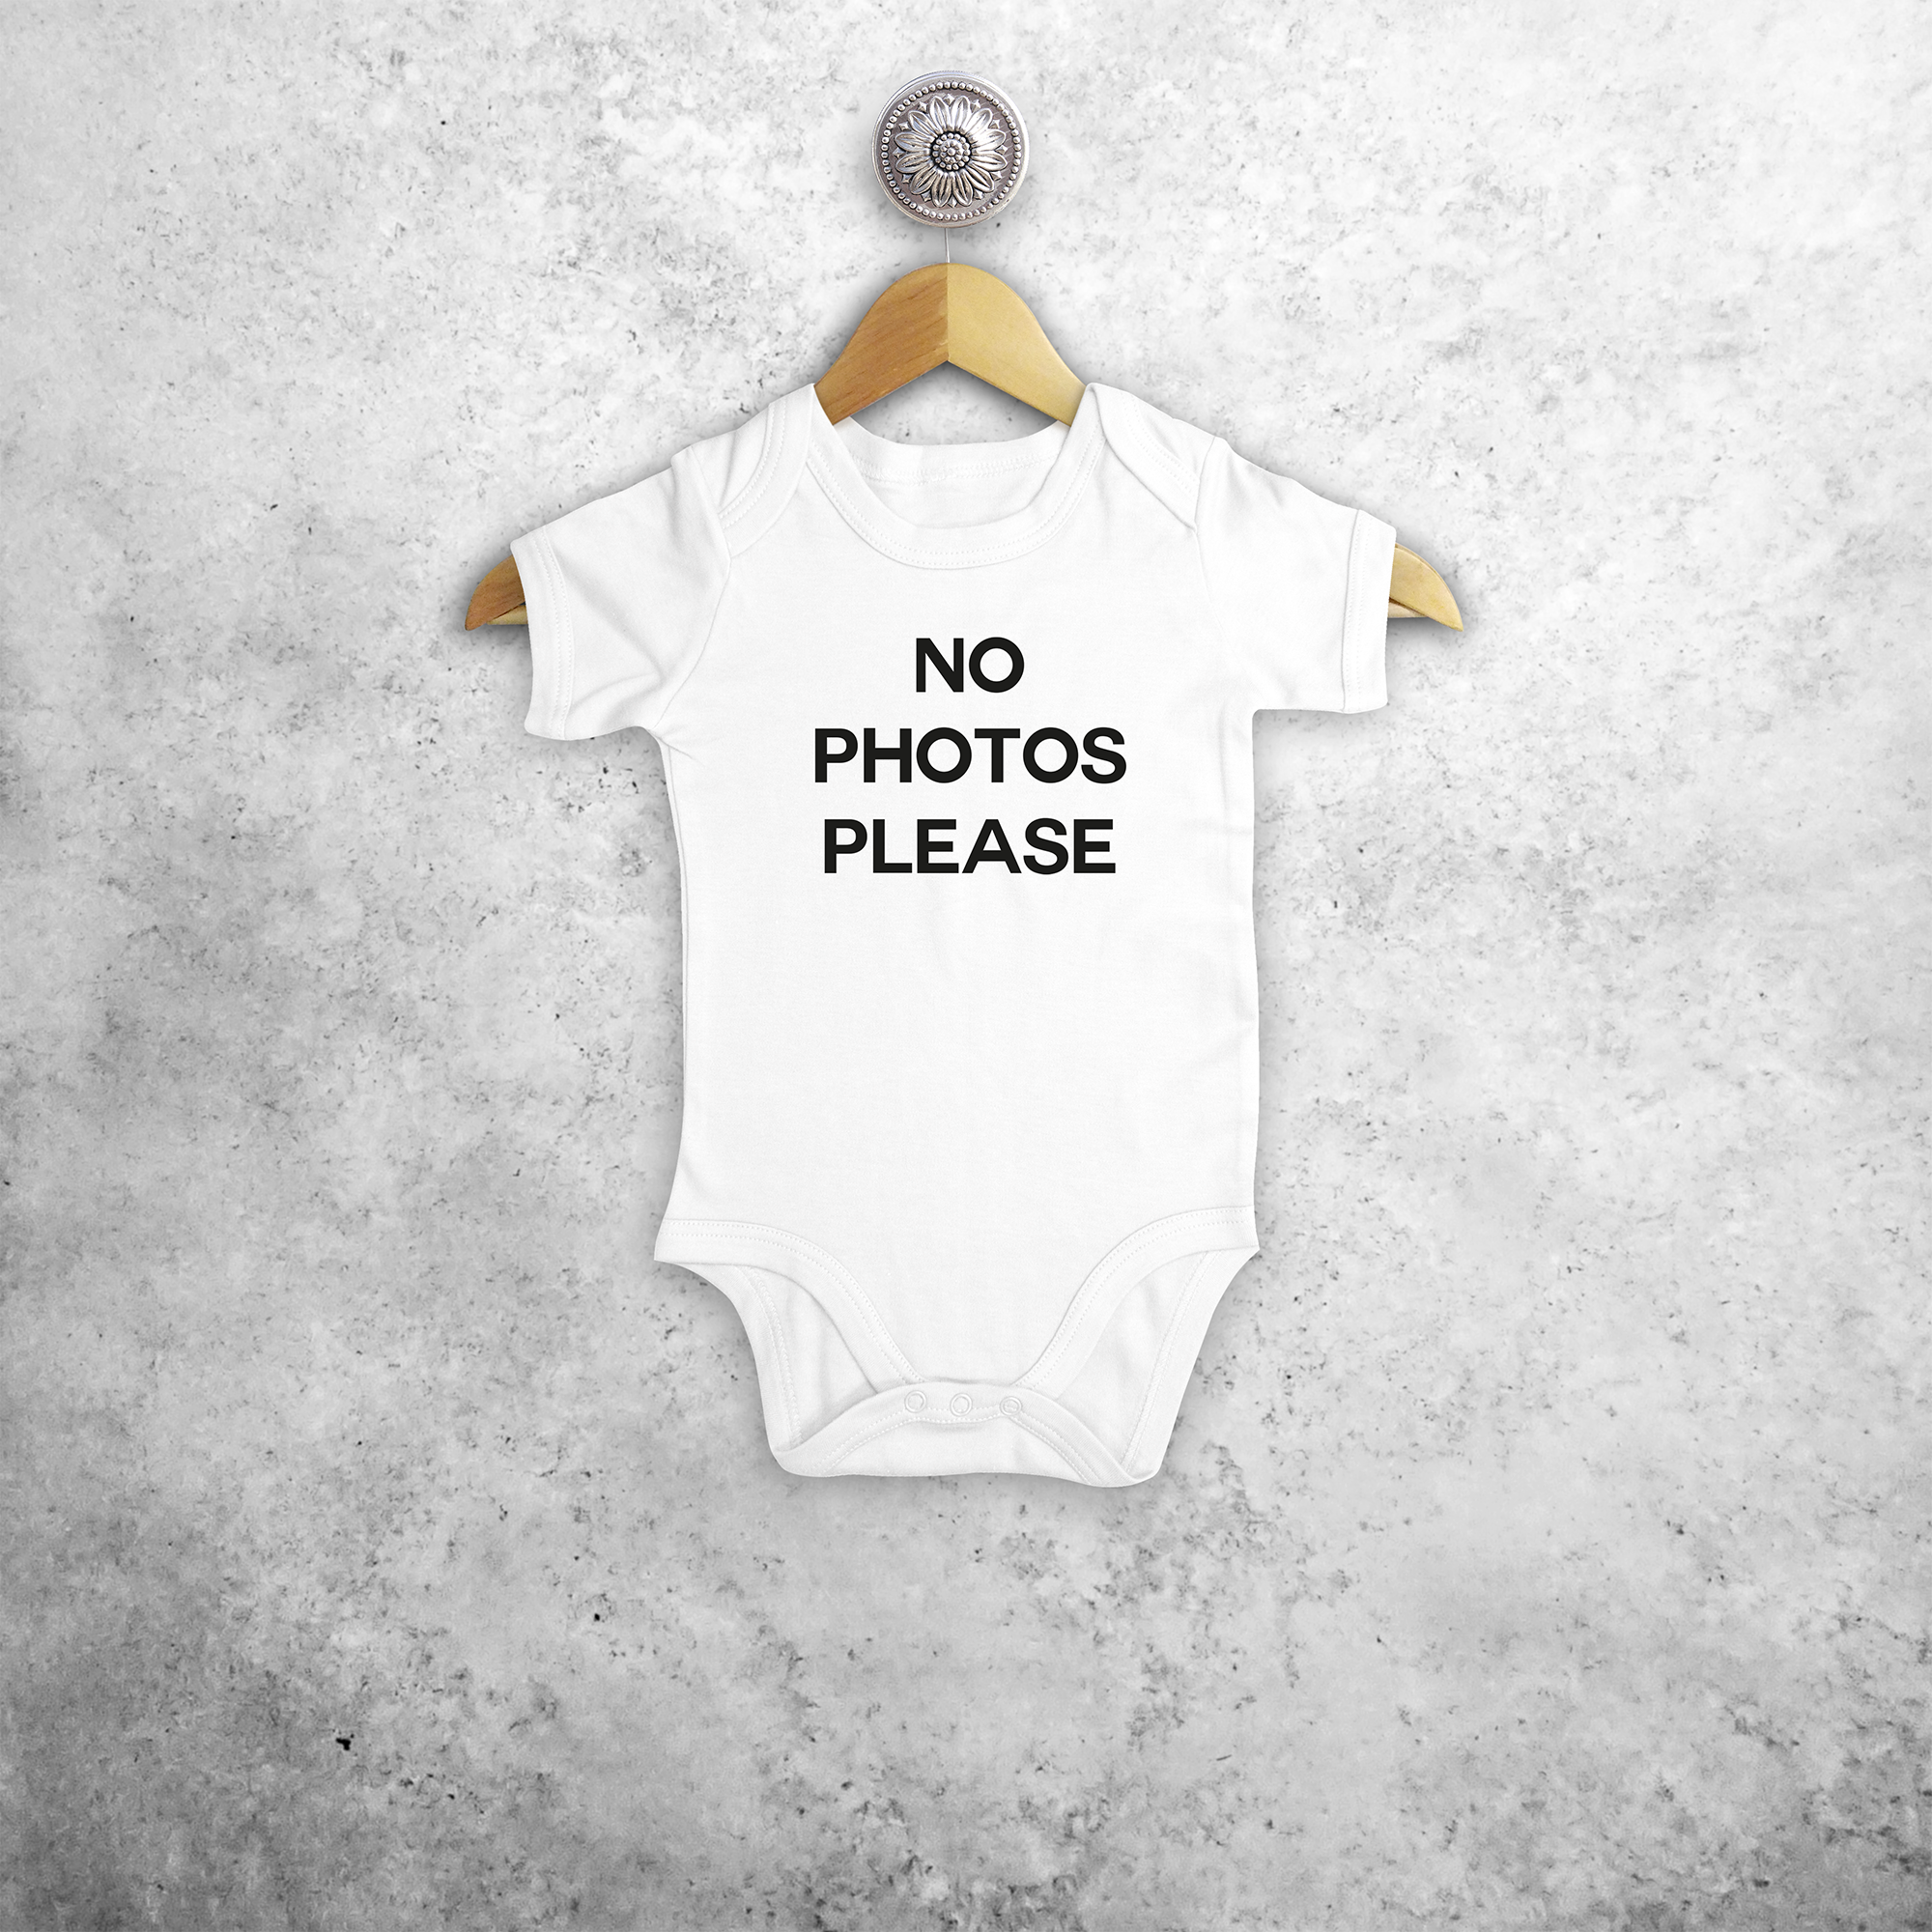 'No photos please' baby kruippakje met korte mouwen